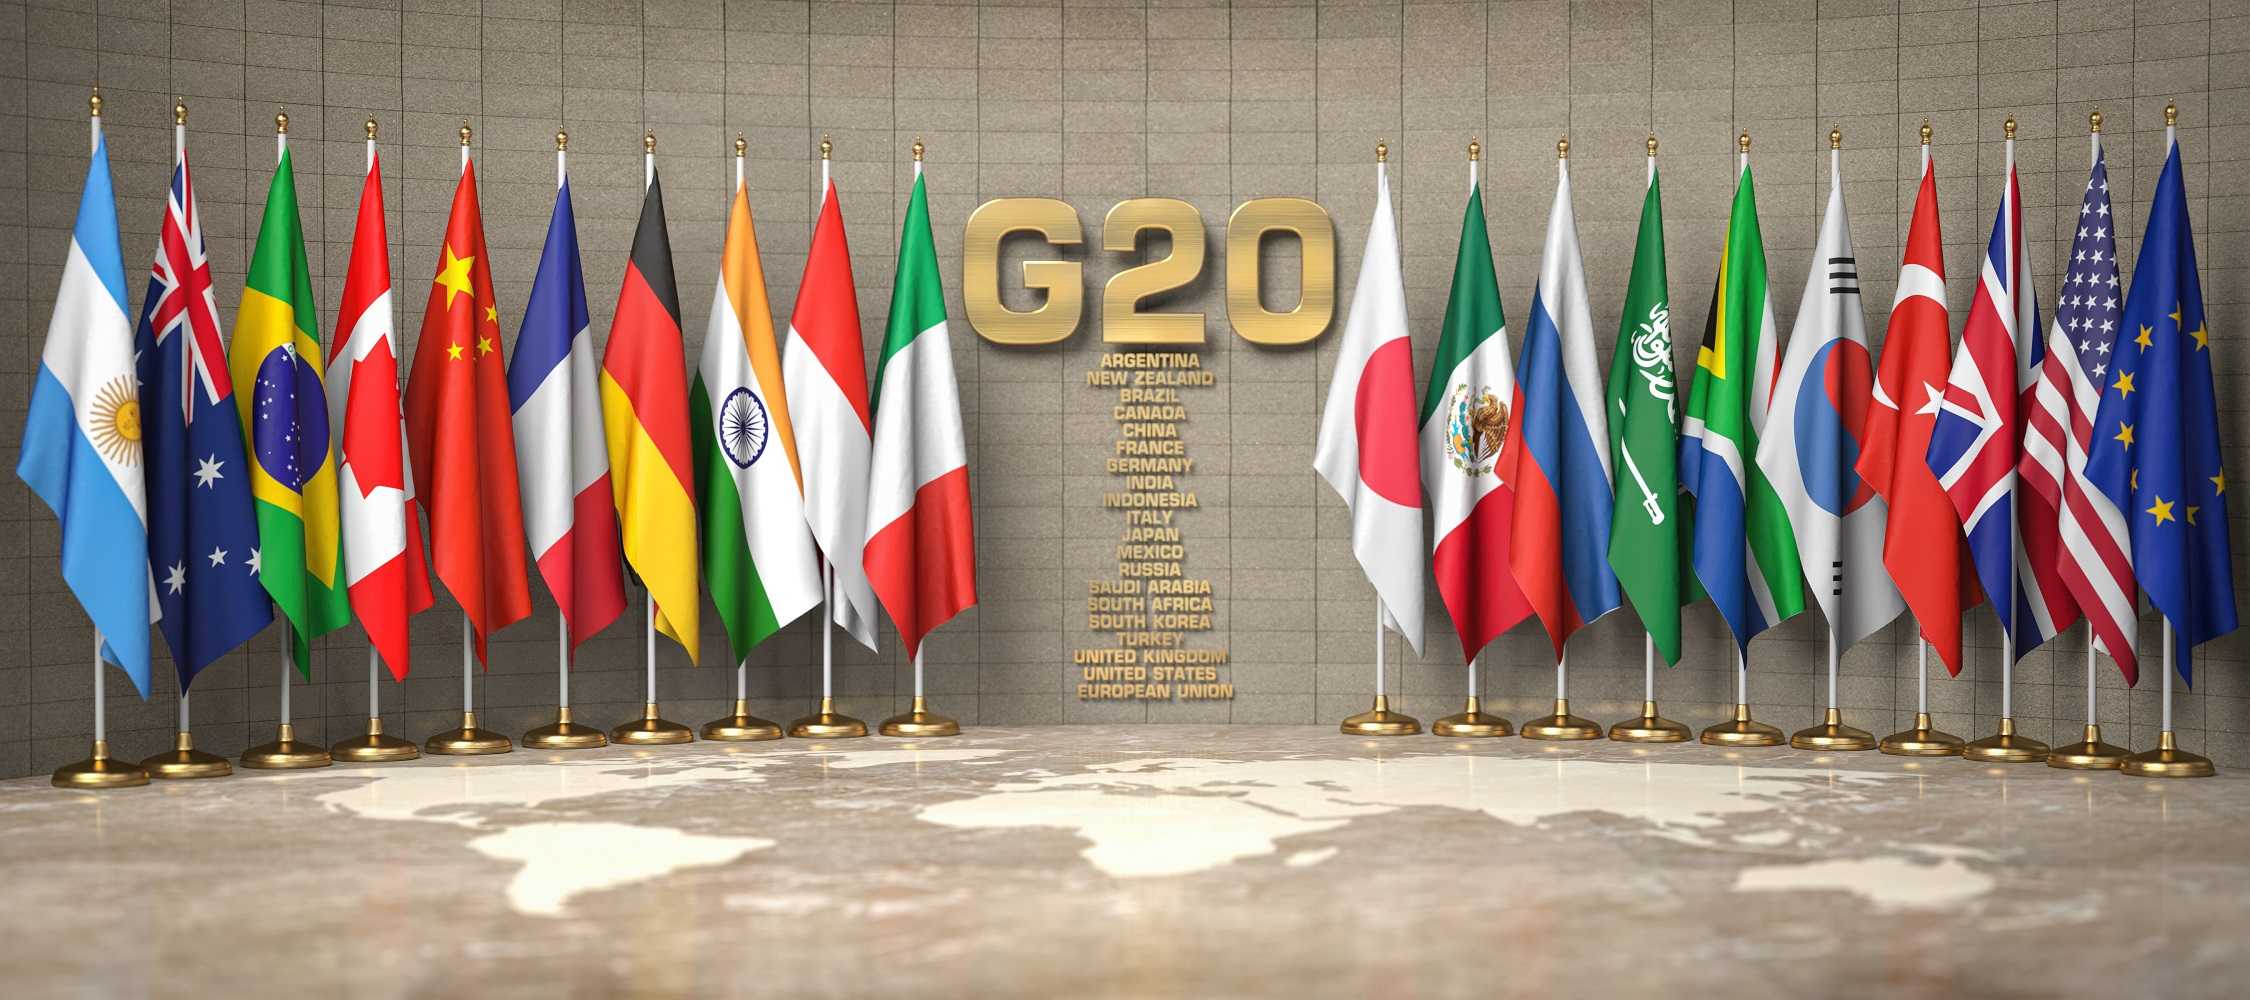 Presidensi G20 Momentum Percepat Transisi Energi